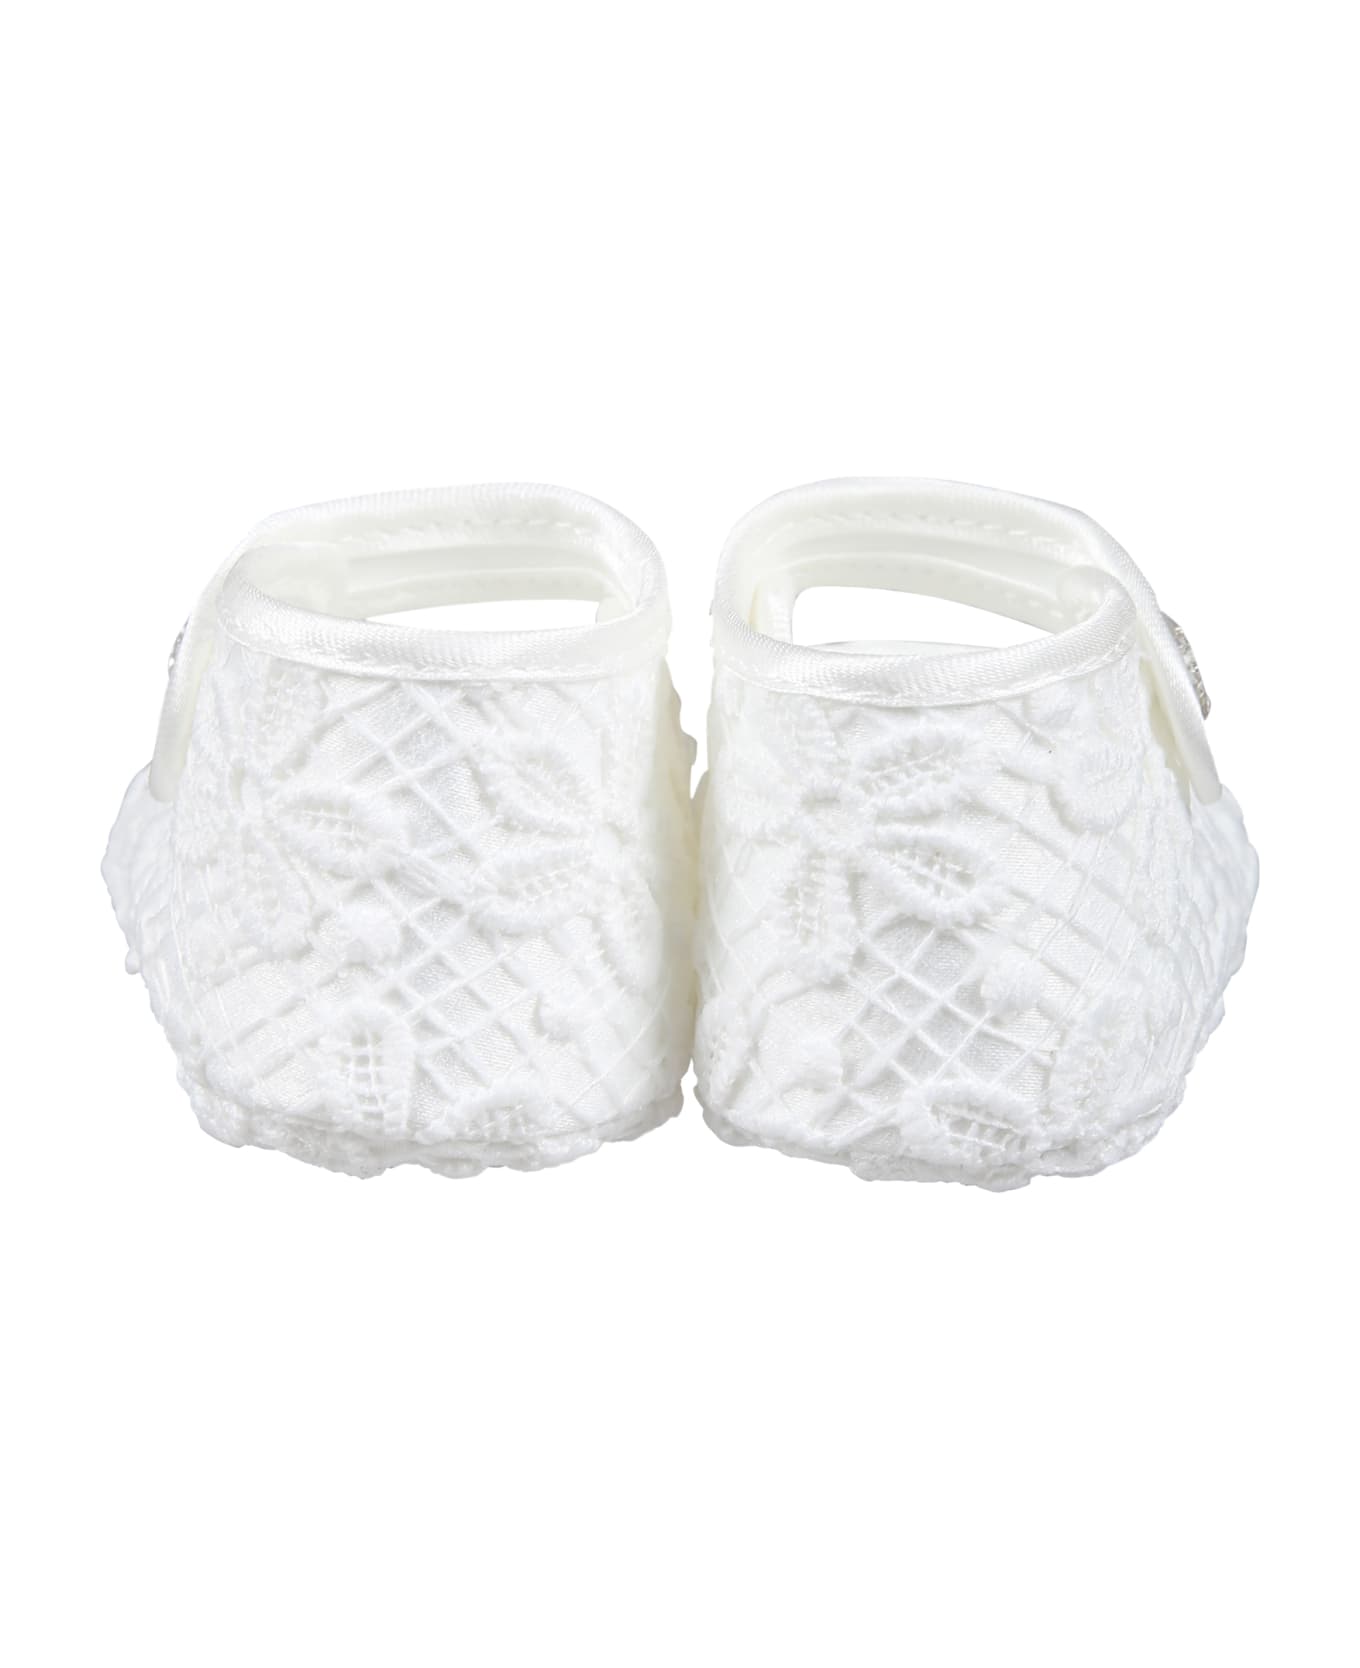 Monnalisa White Flat Shoes For Baby Girl In Dentelle Macramé - White